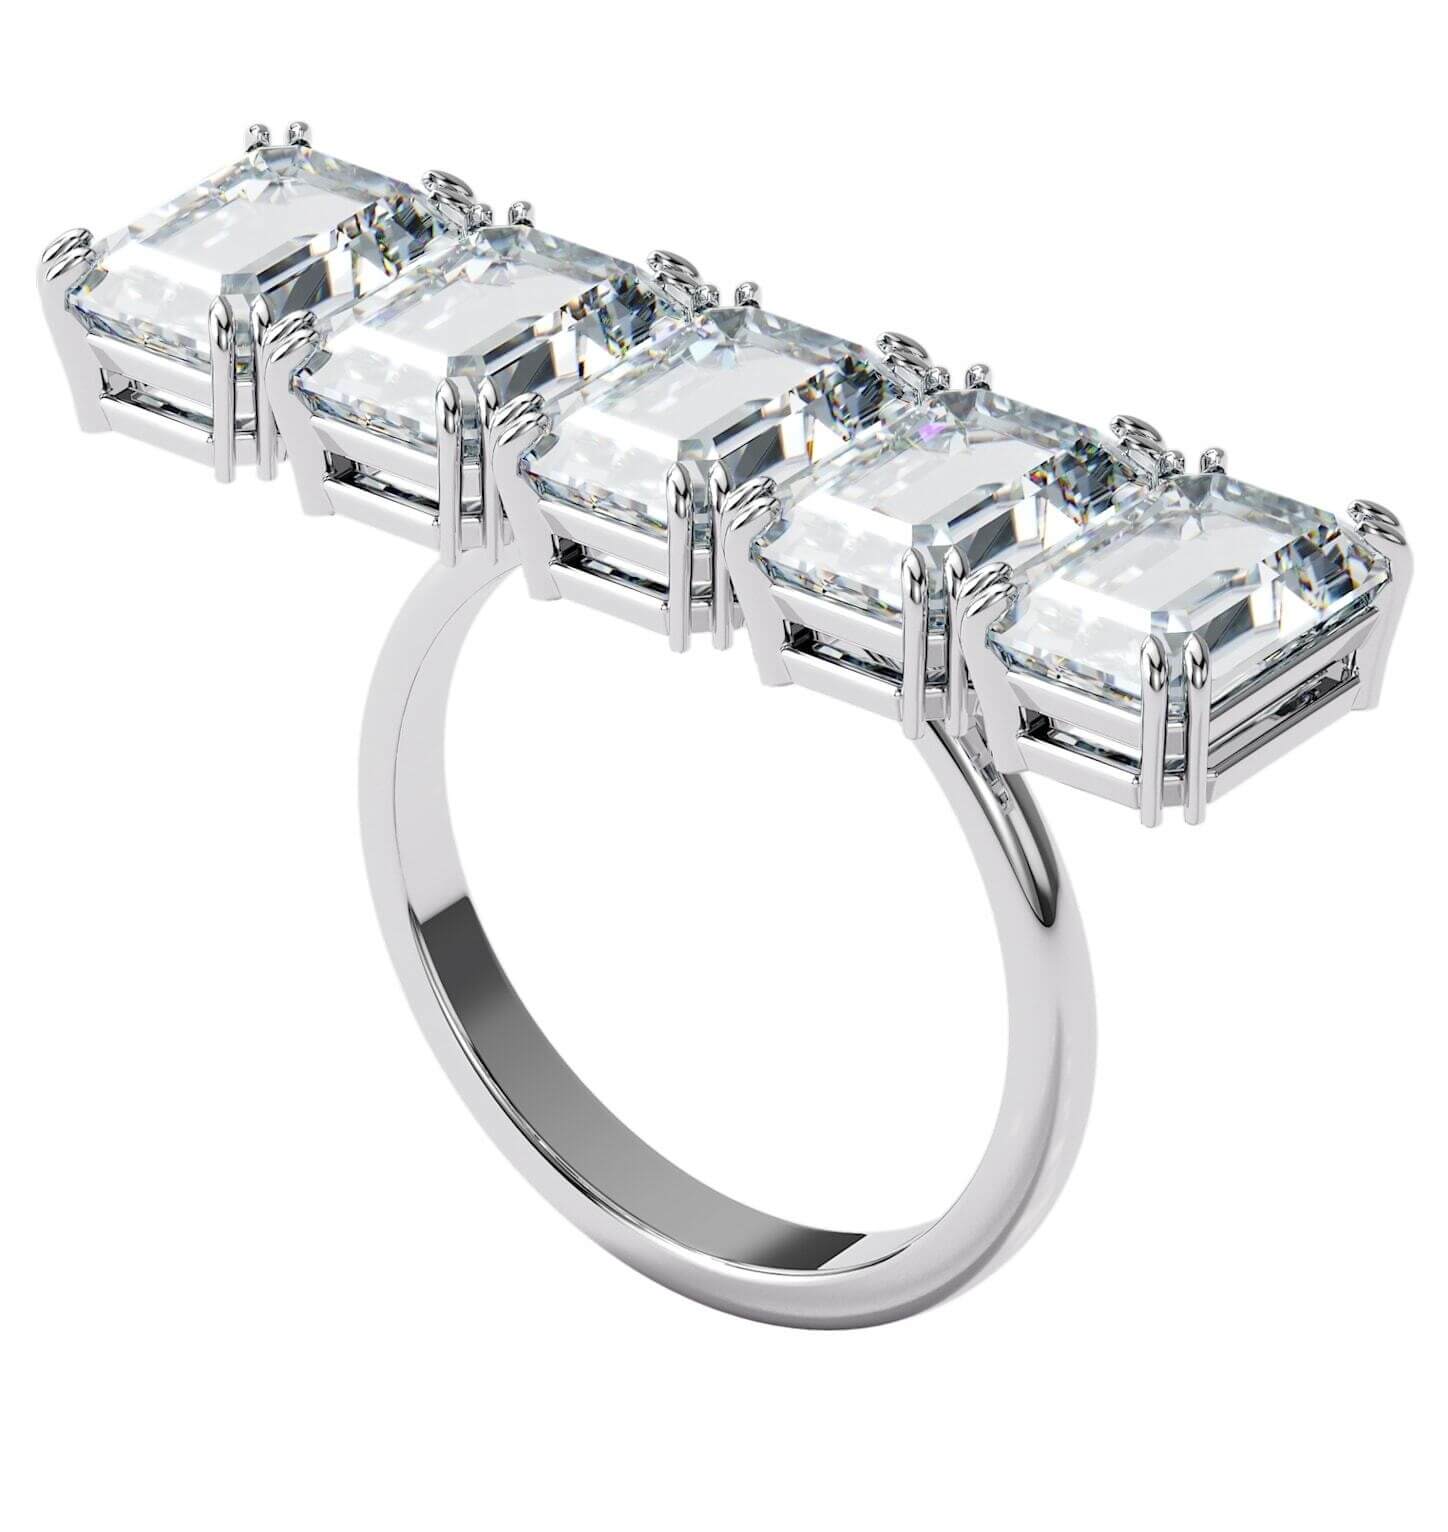 Swarovski Masívny trblietavý prsteň s kryštálmi Millenia 5610730 50 mm